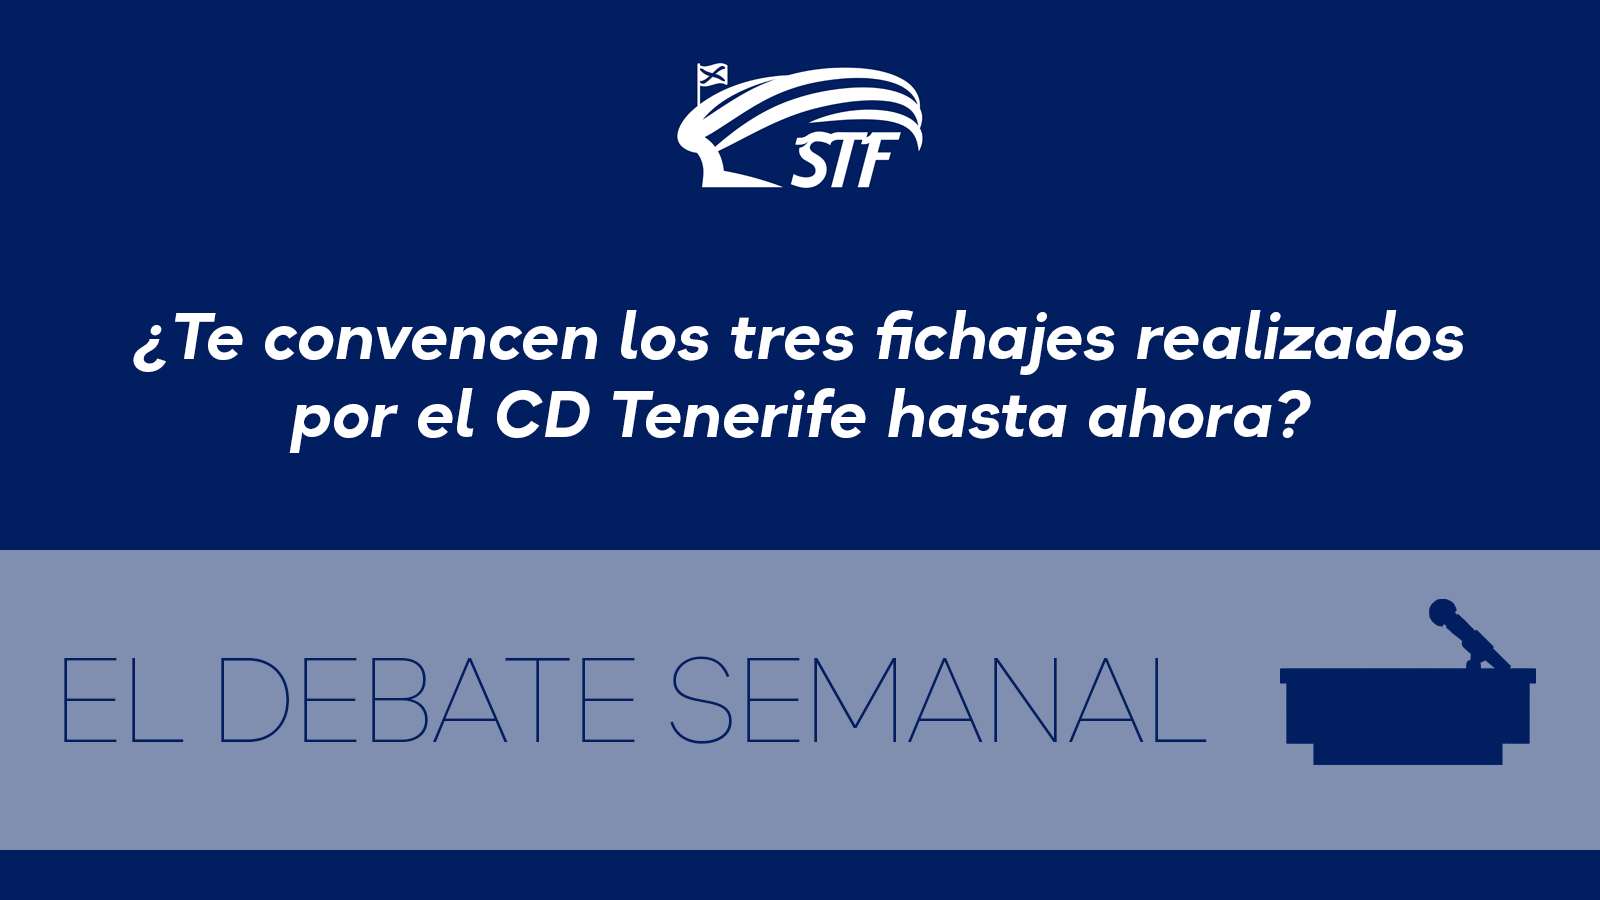 El Debate Semanal: ¿Te convencen los tres fichajes realizados por el CD Tenerife hasta ahora? El 76% dice sí